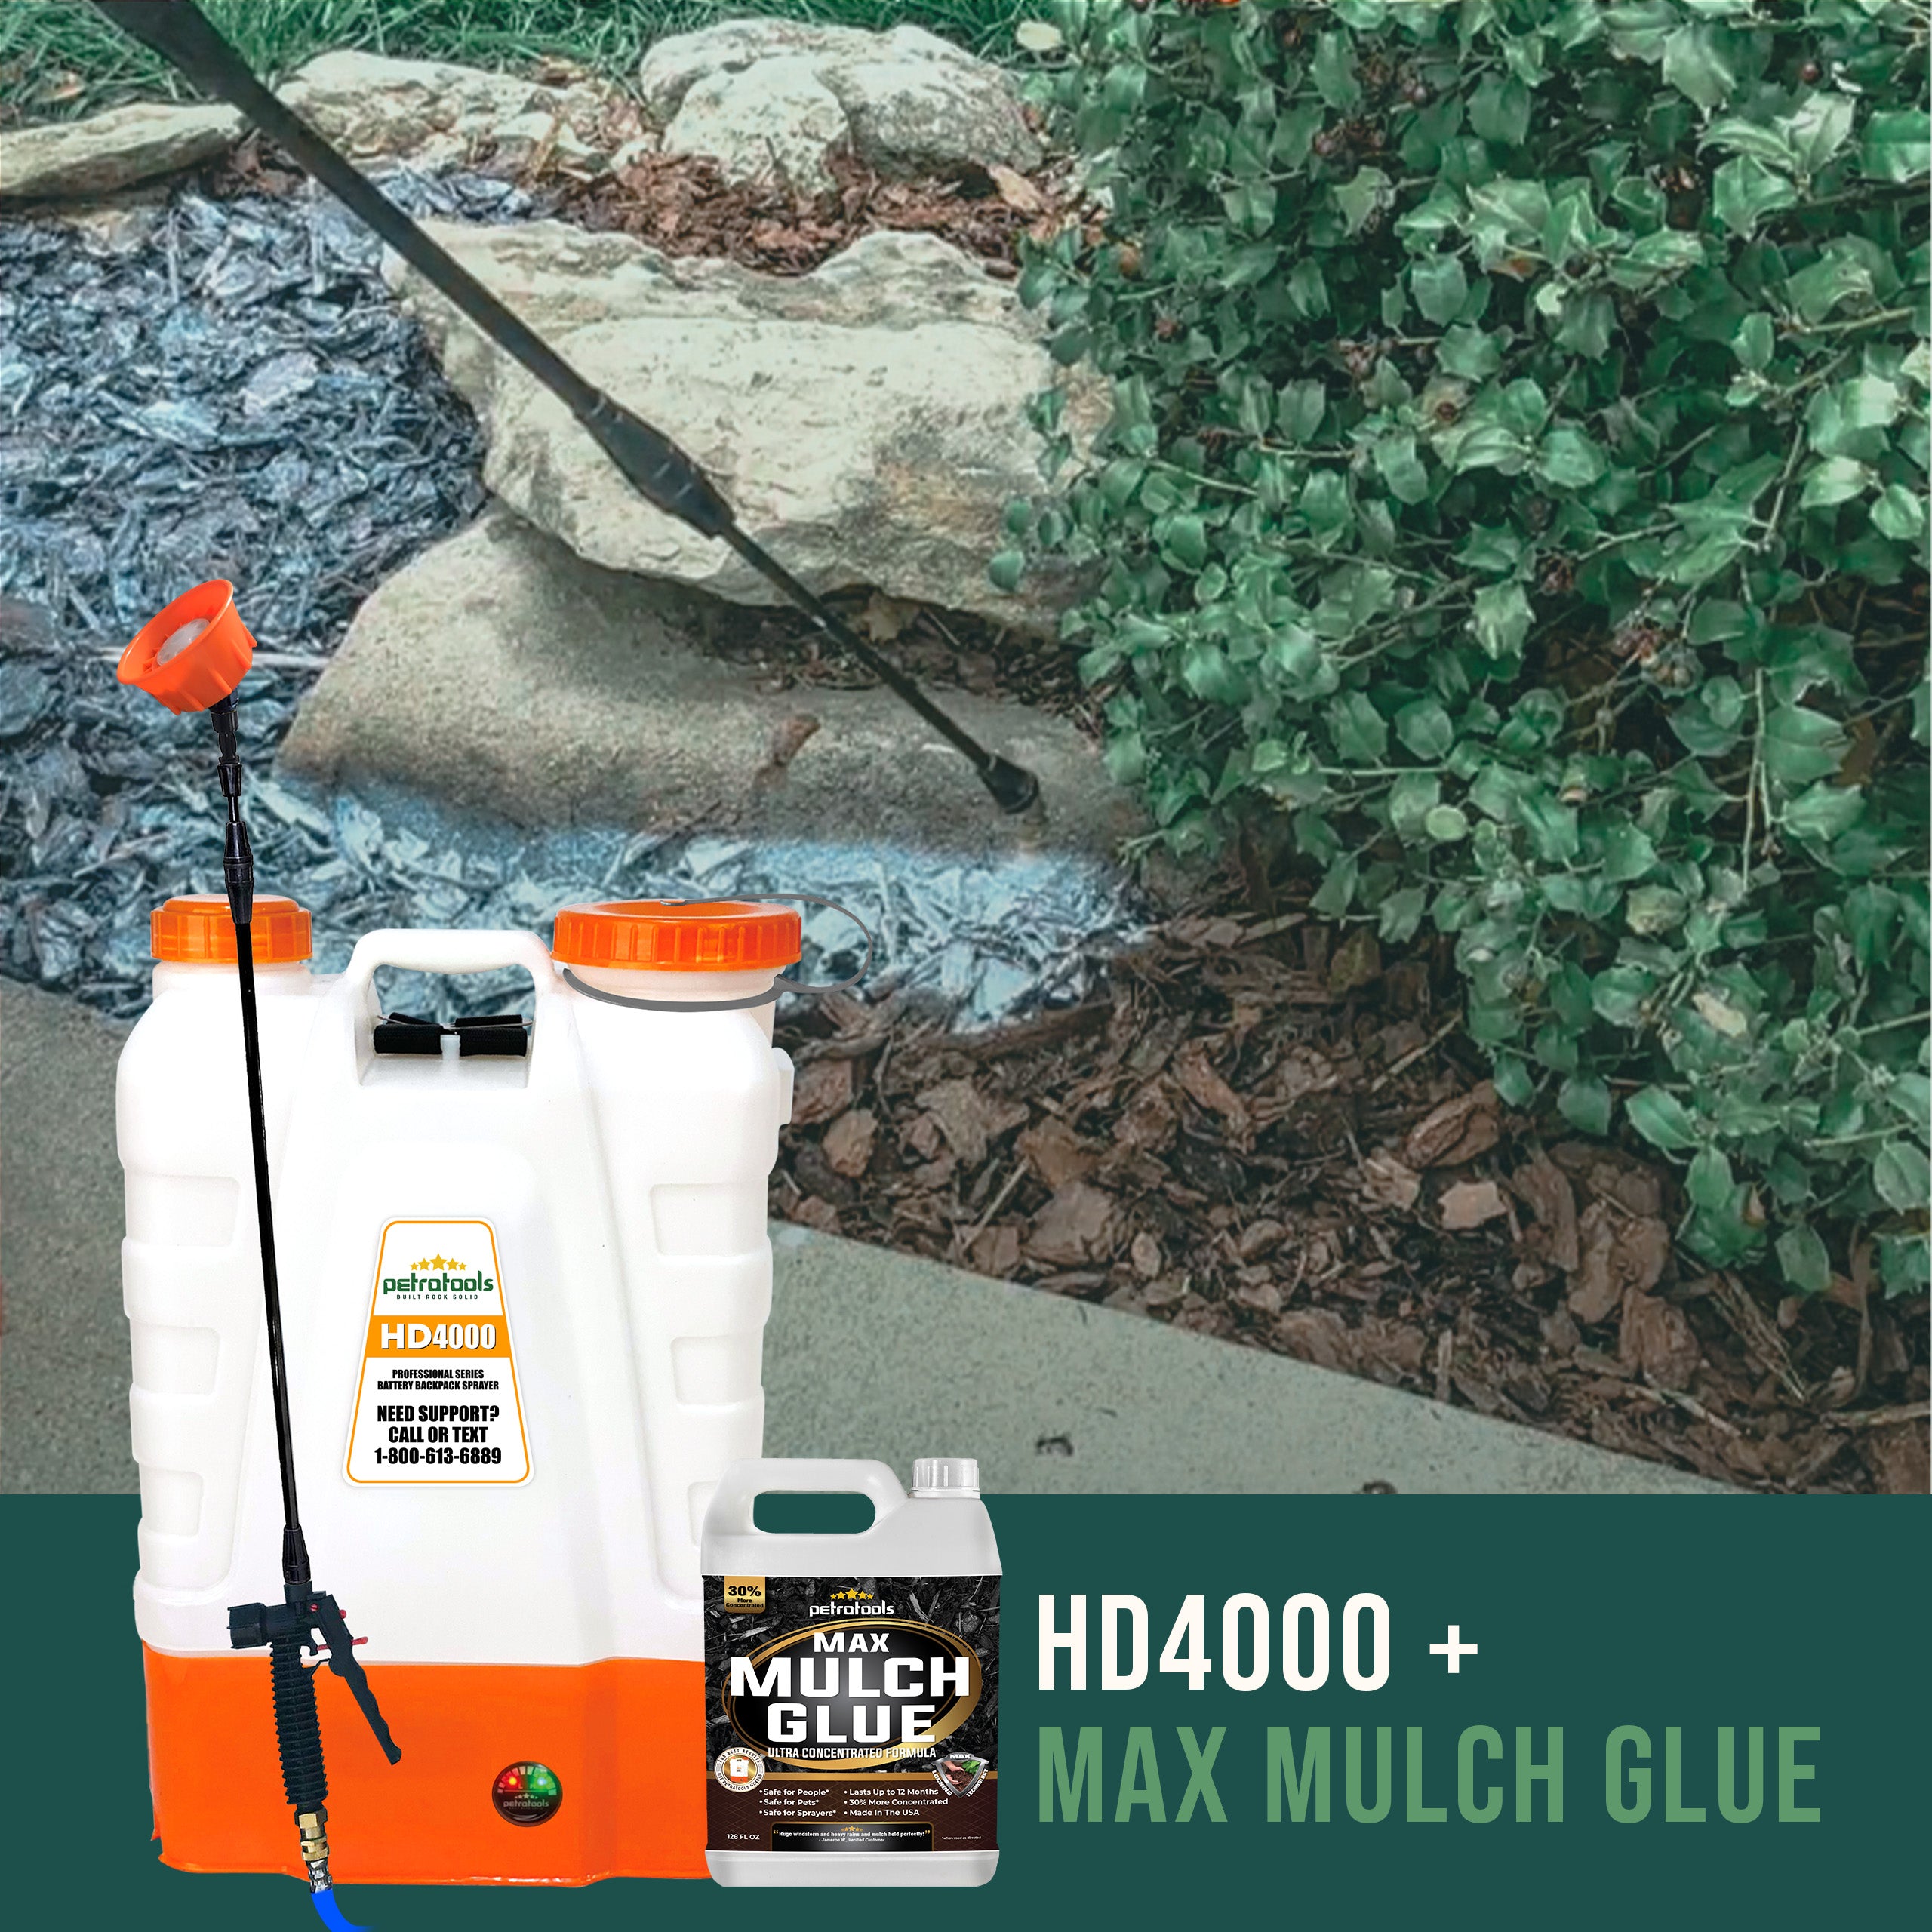 PetraTools® 1Gal Max Mulch Glue & HD4000 Bundle